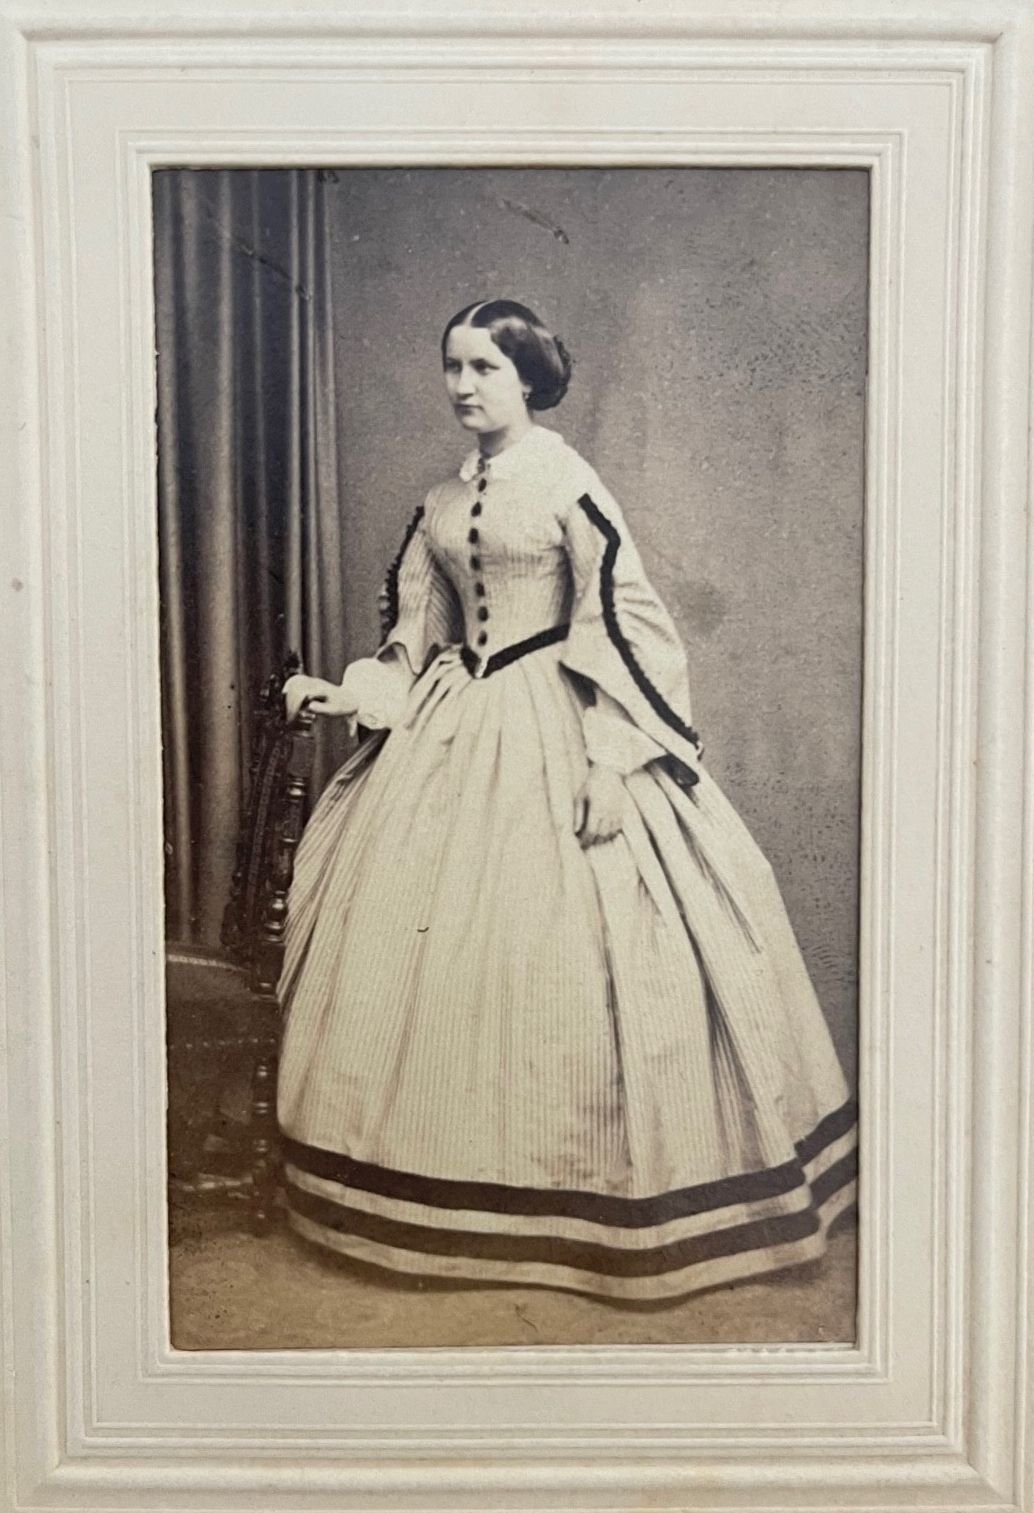 Fotografie, Jacob Seib, Marie Prinzessin zu Solms-Lich, ca. 1865. (Taunus-Rhein-Main - Regionalgeschichtliche Sammlung Dr. Stefan Naas CC BY-NC-SA)